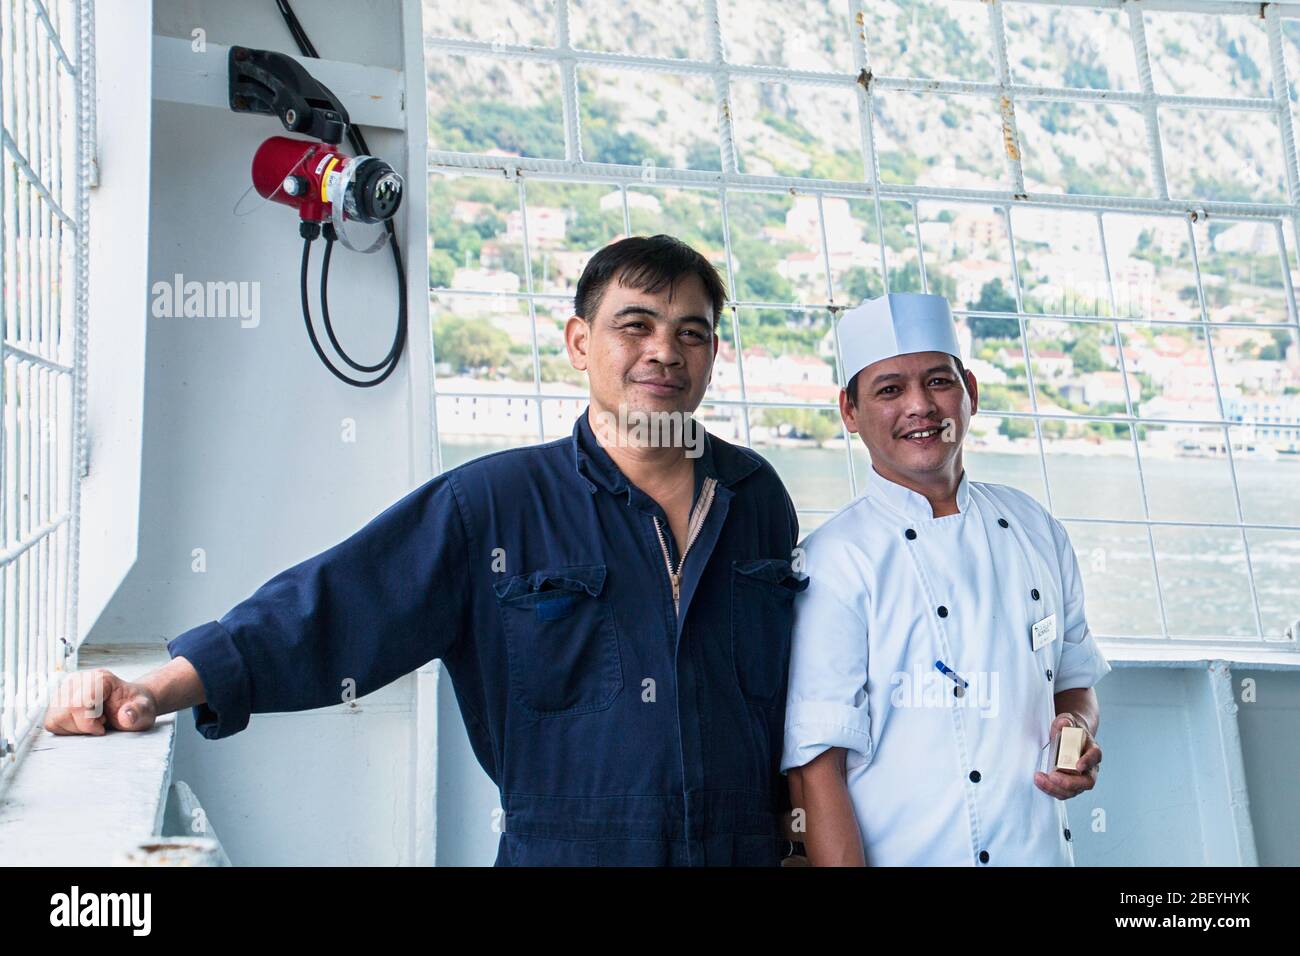 Lächelnd filippino cew von einem Kreuzfahrtschiff, philippinische Crew, Schiffe Crew, Handelsmarine, passagierschiff Crew, Kreuzfahrtschiff job, pradeep Subramanian Stockfoto